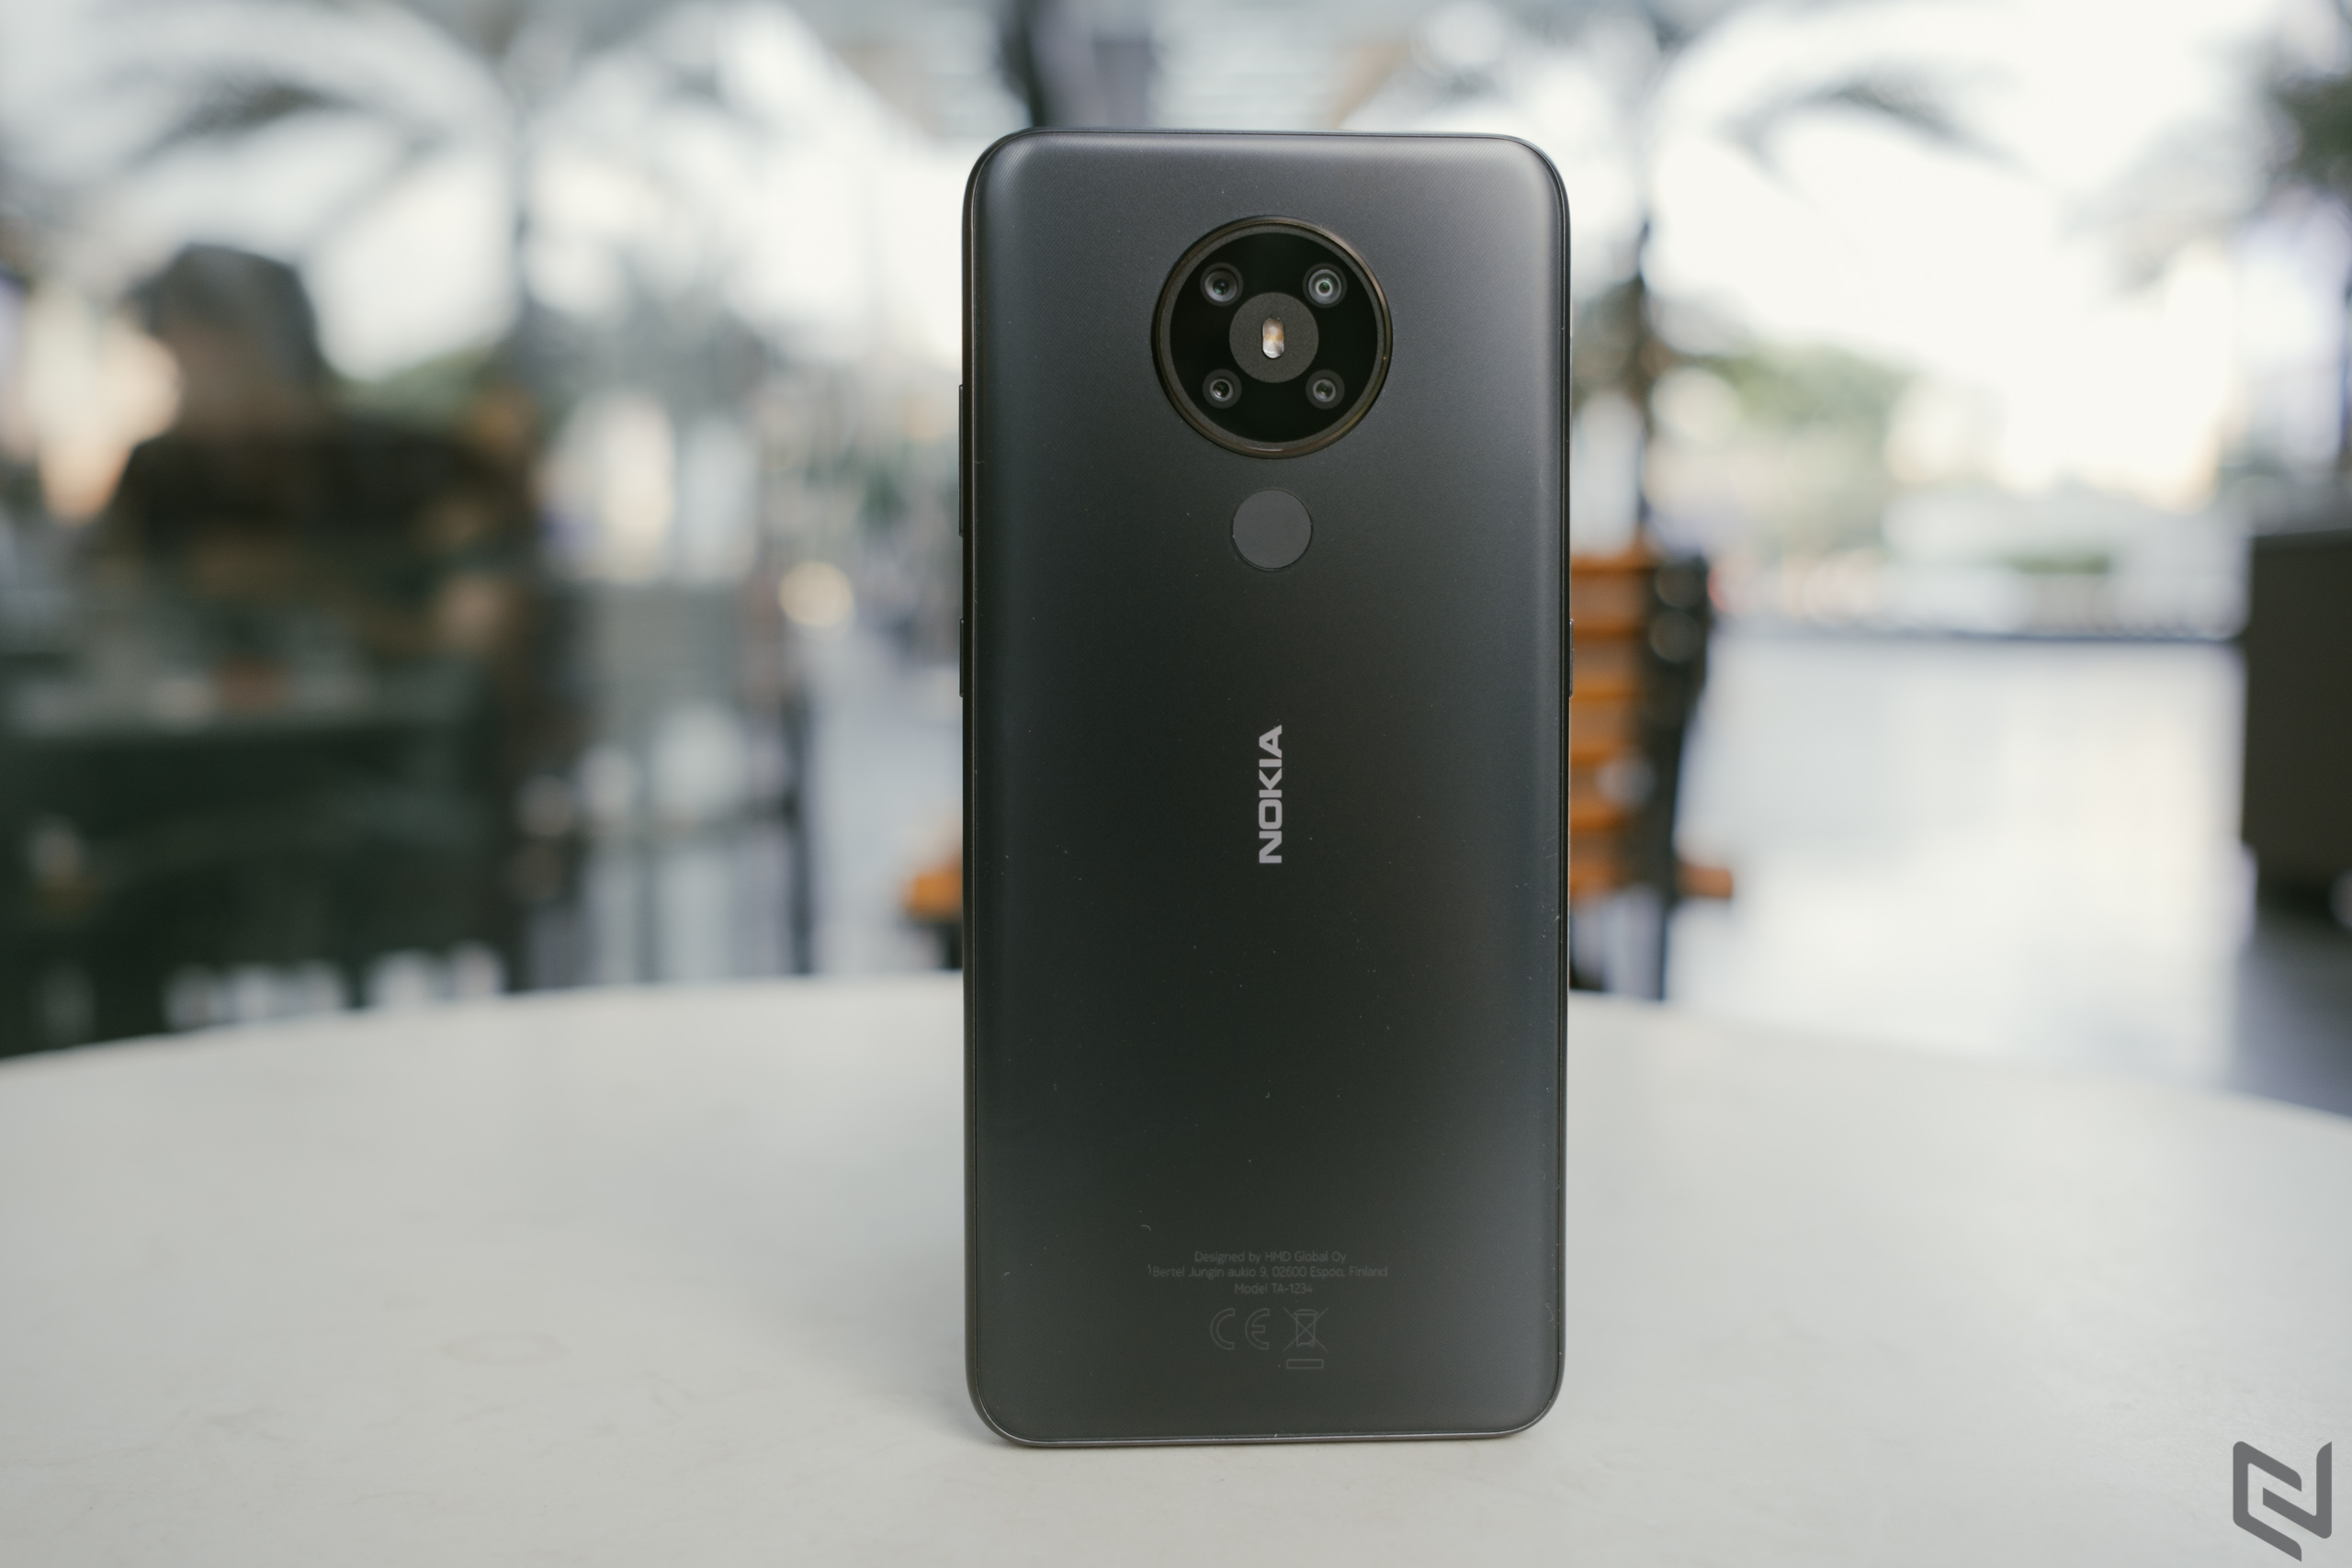 Mở hộp và đánh giá hiệu năng Nokia 5.3: Mạnh mẽ với Snapdragon 665, giá chưa tới 4 triệu đồng